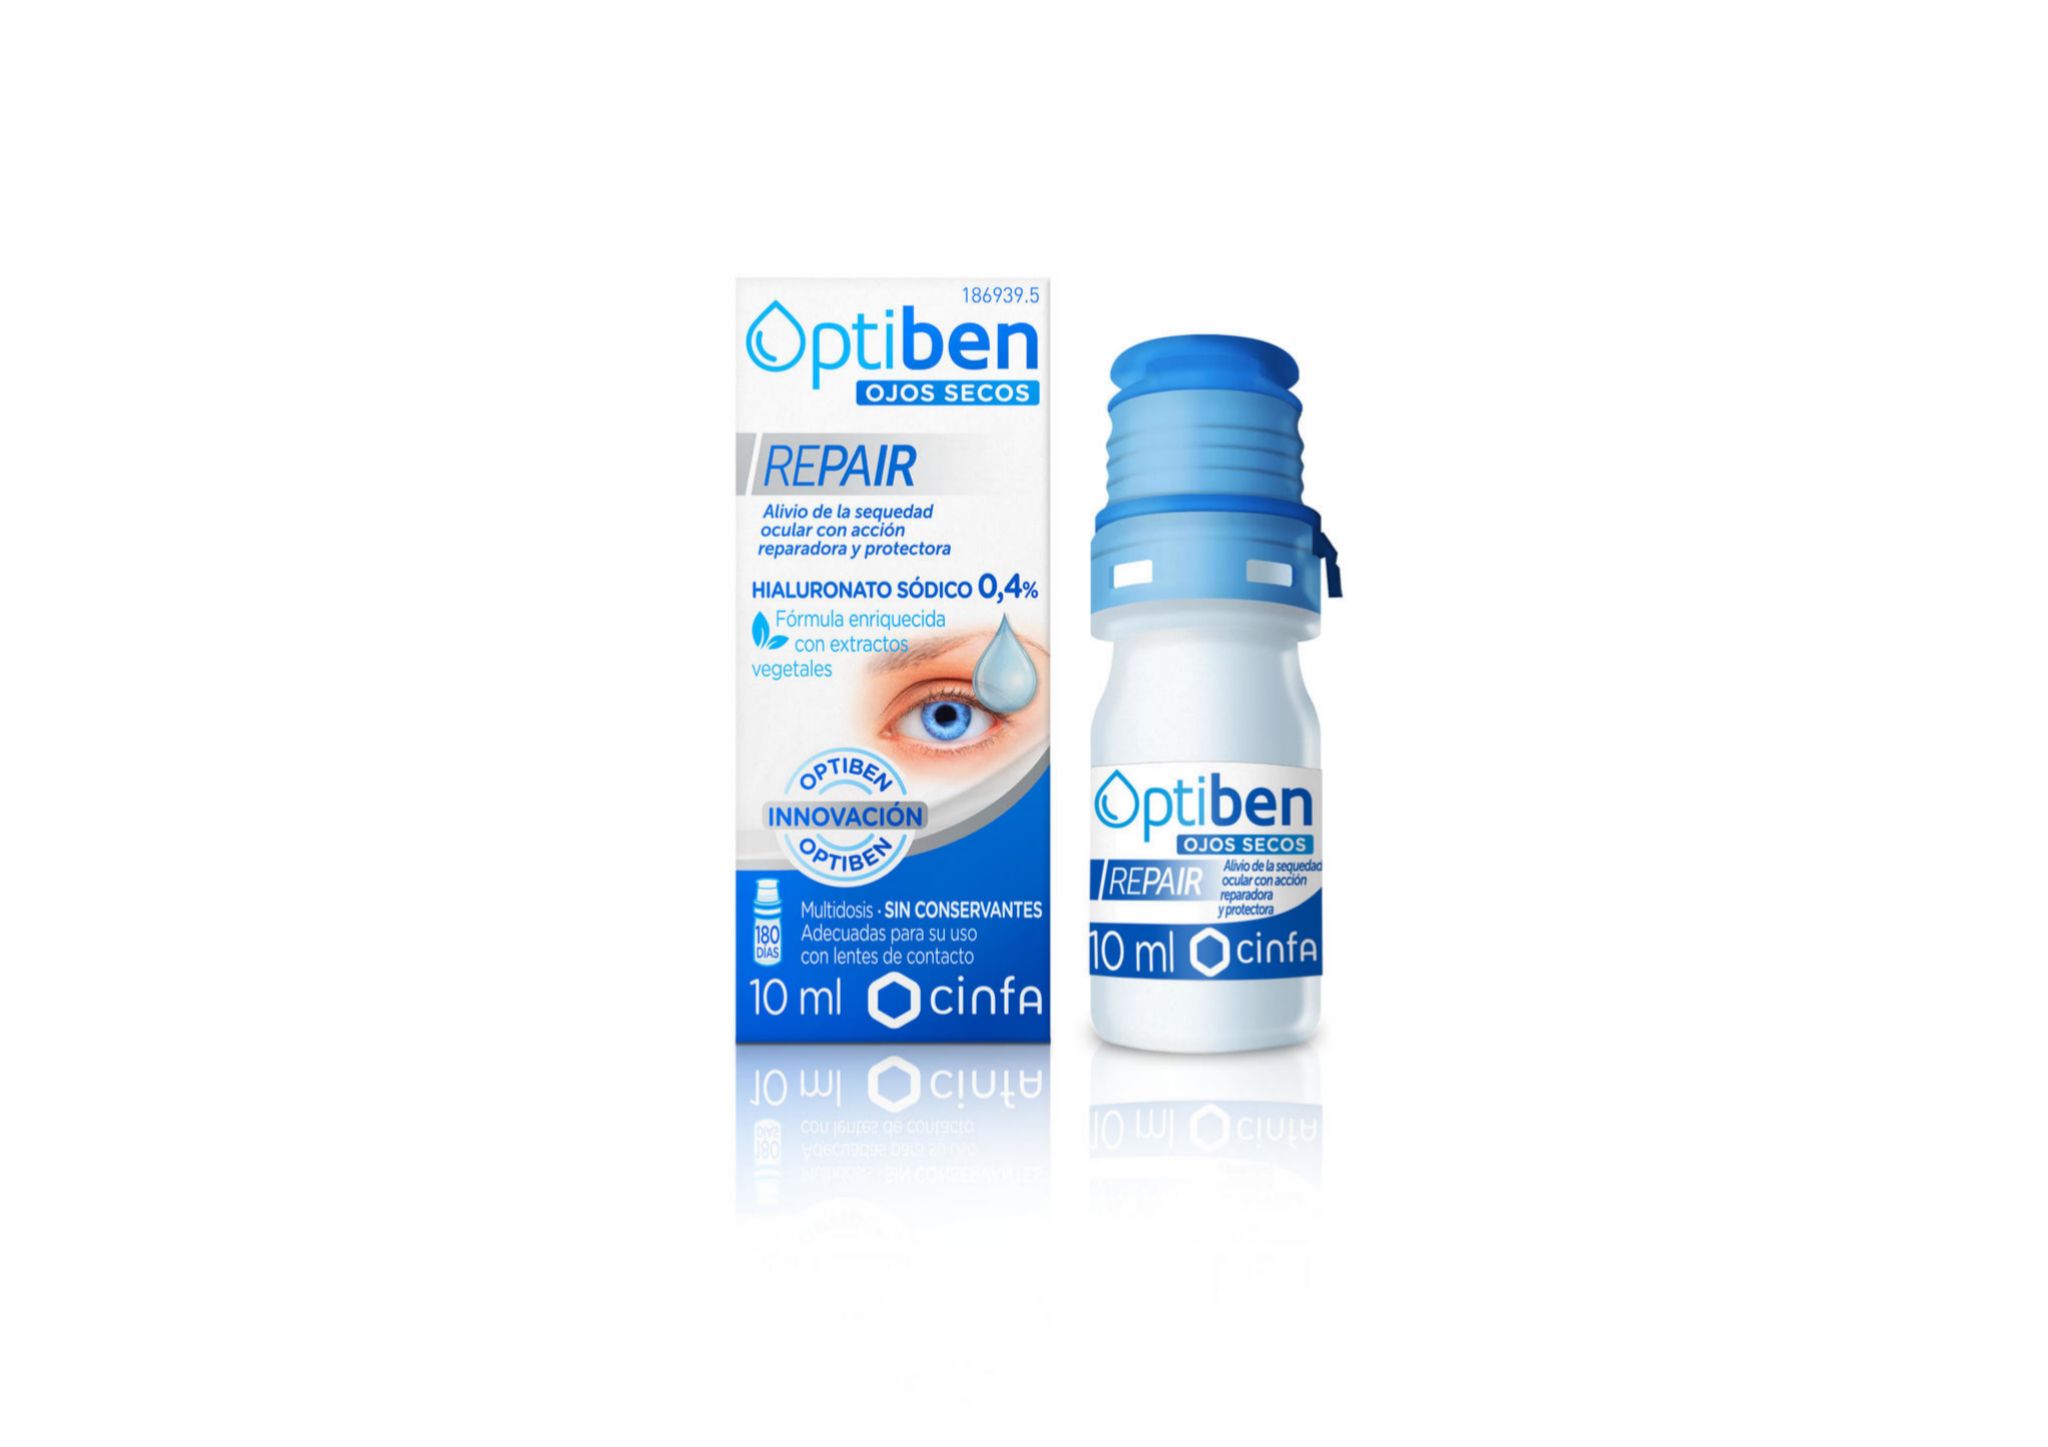 Optiben, Be + (14 euros). Alivia la fatiga ocular, hidrata y mejora la circulación venosa.